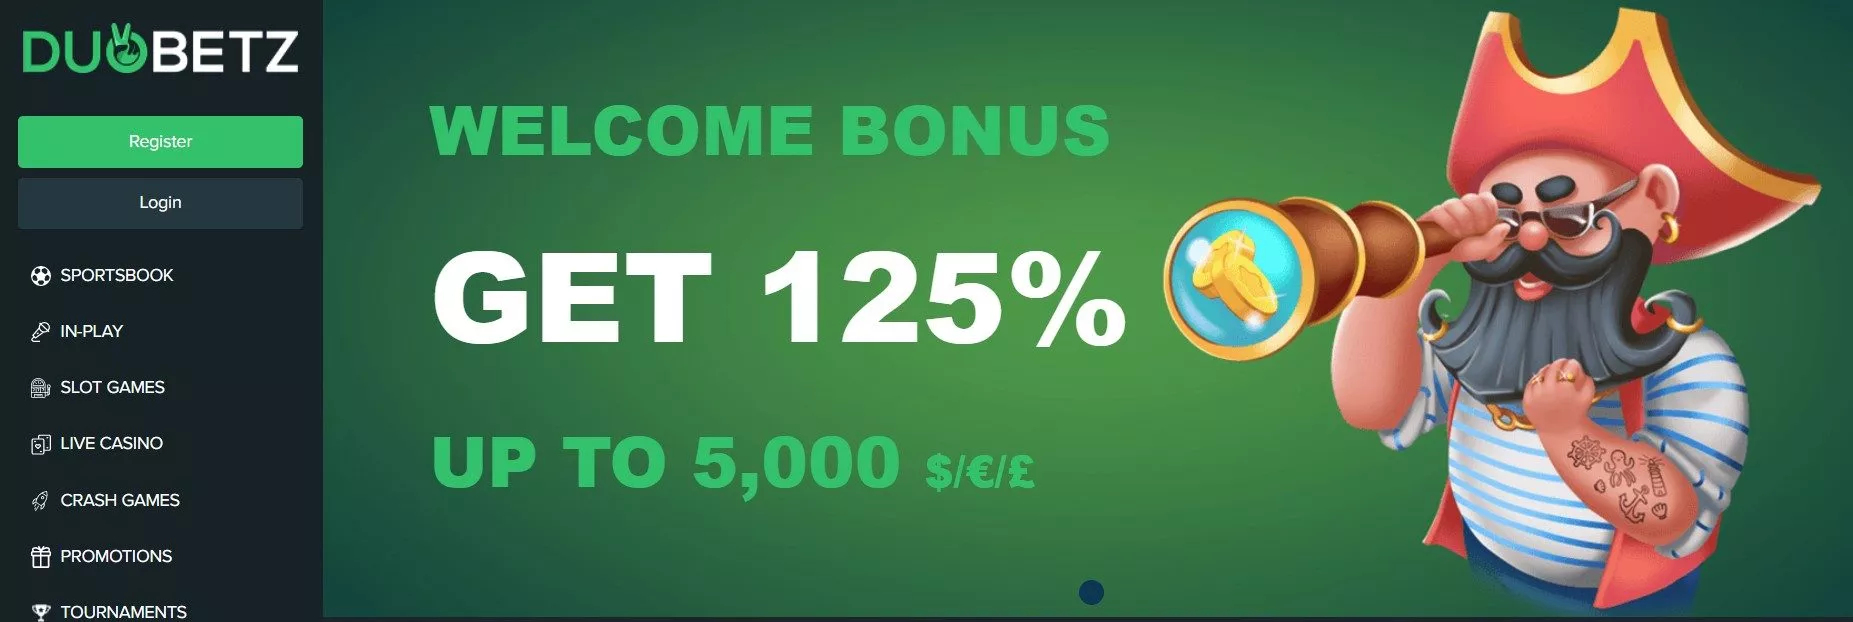 duobetz welcome bonus